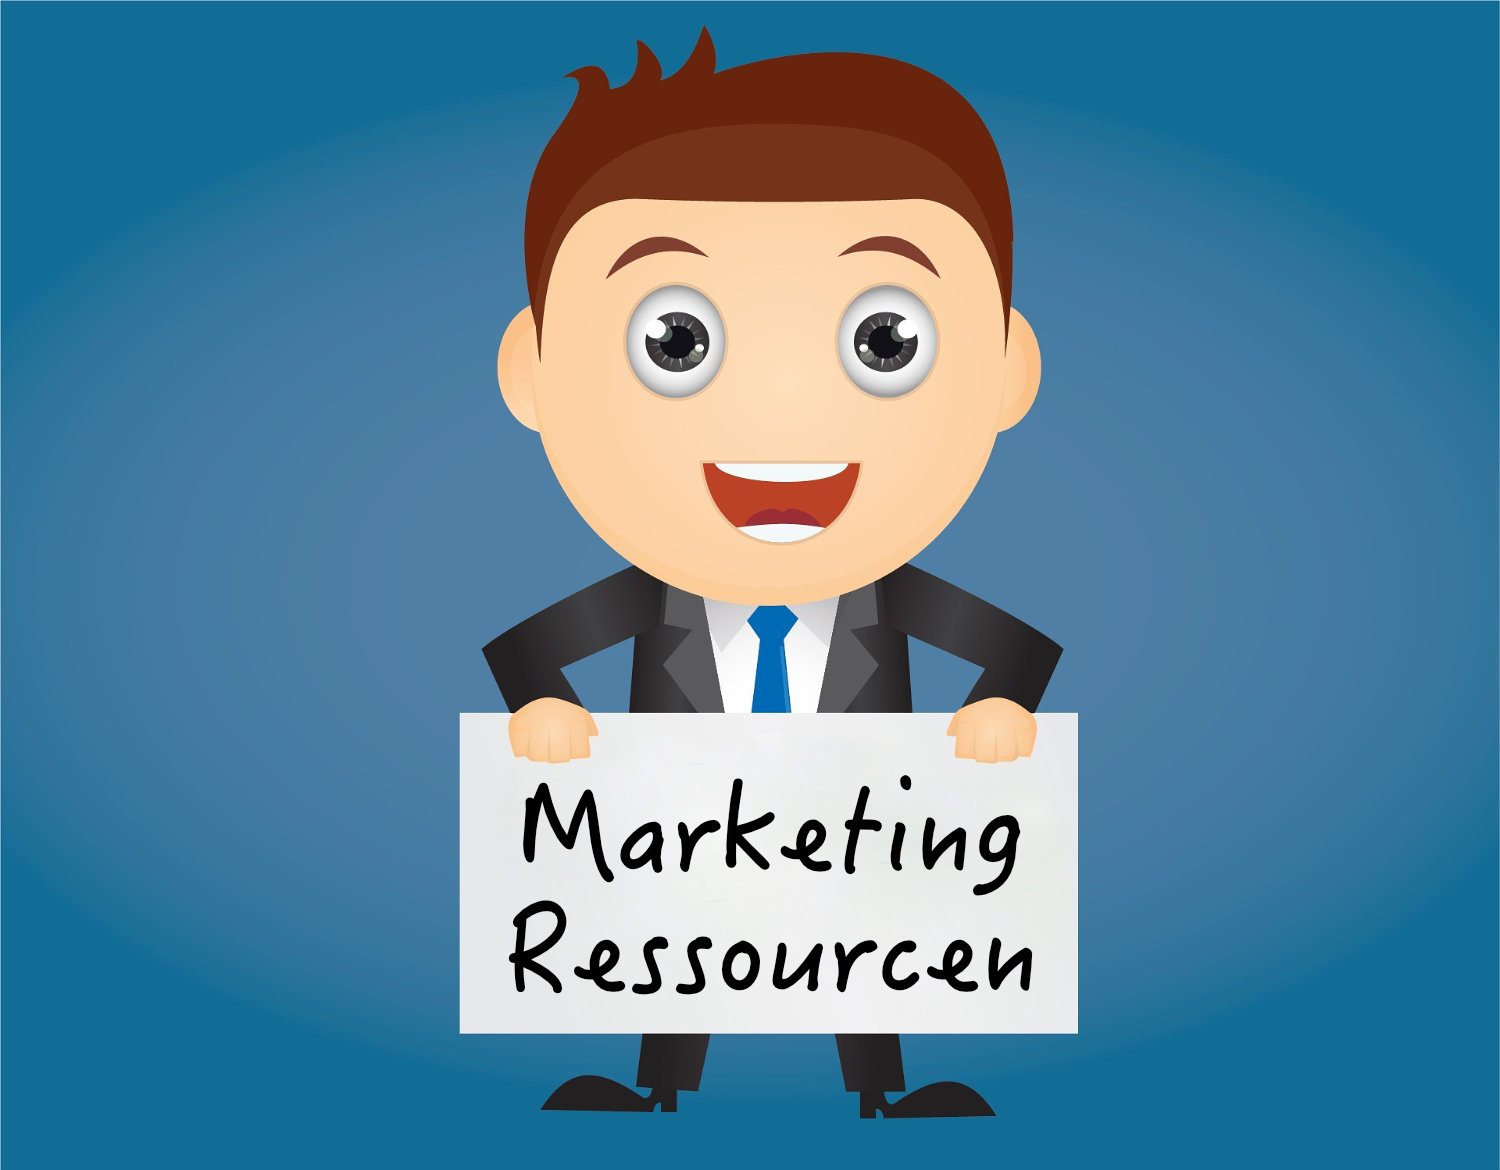 Online Marketing Ressourcen, Auflistung von relevanten Angeboten im Beitrag